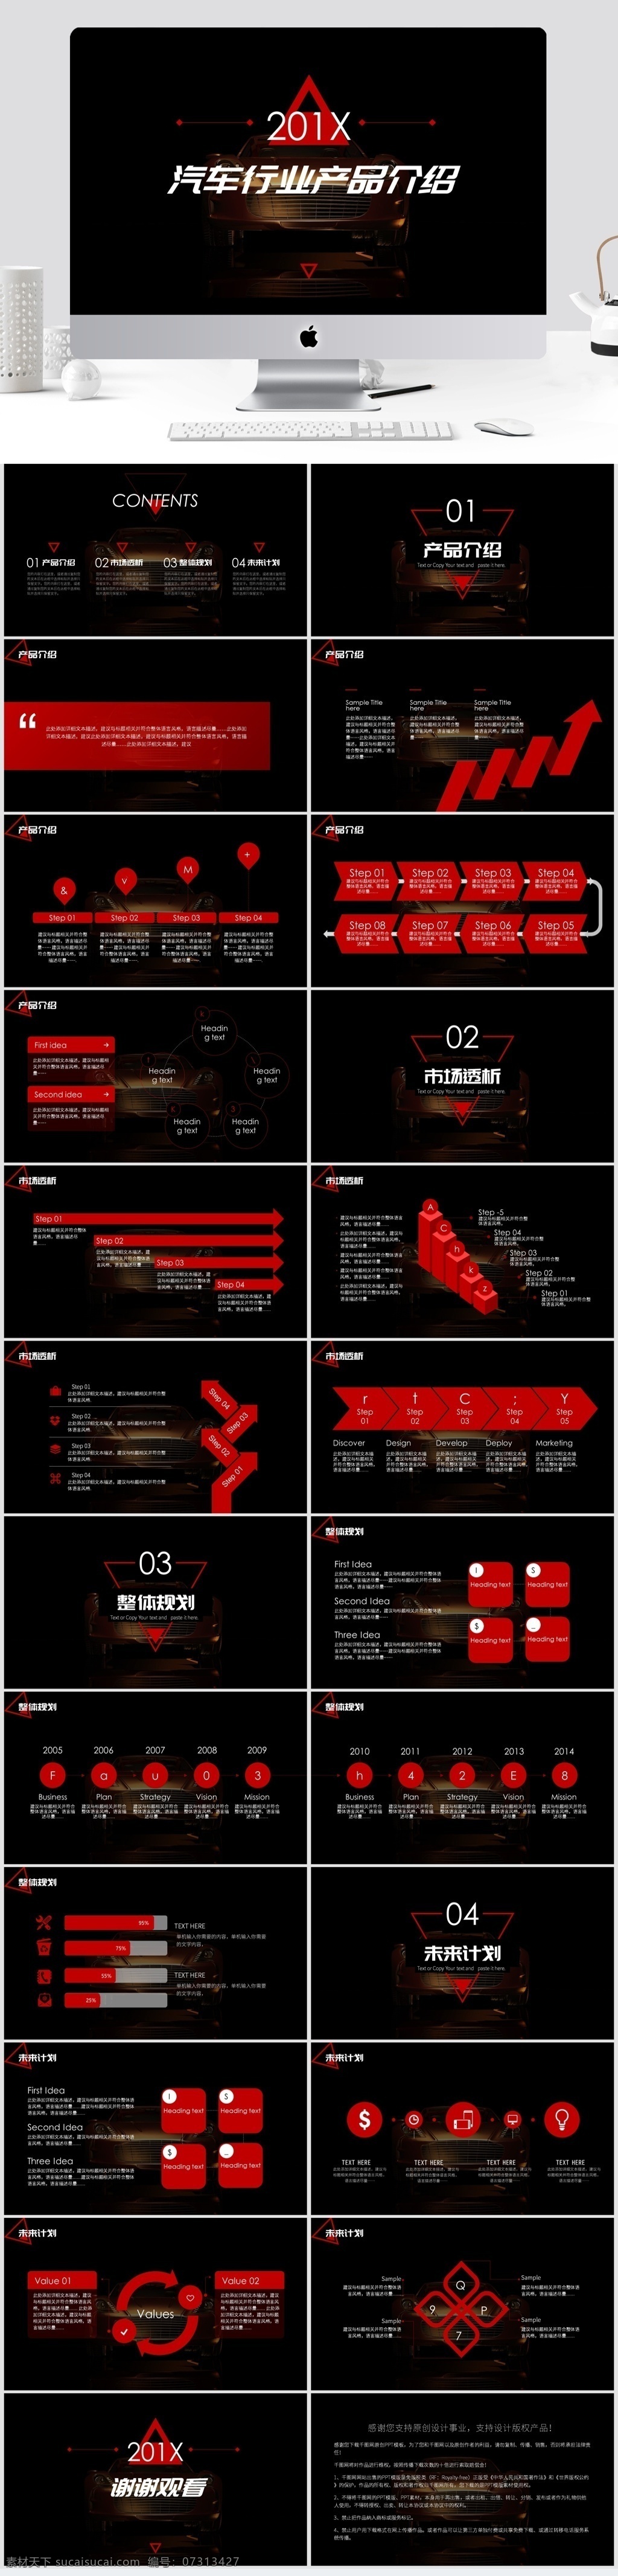 红 黑 炫 酷 汽车 产品 发布 模板 红色 黑色 ppt模板 高端 炫酷 产品介绍 计划总结 工作汇报 产品发布 跑车 速度 激情